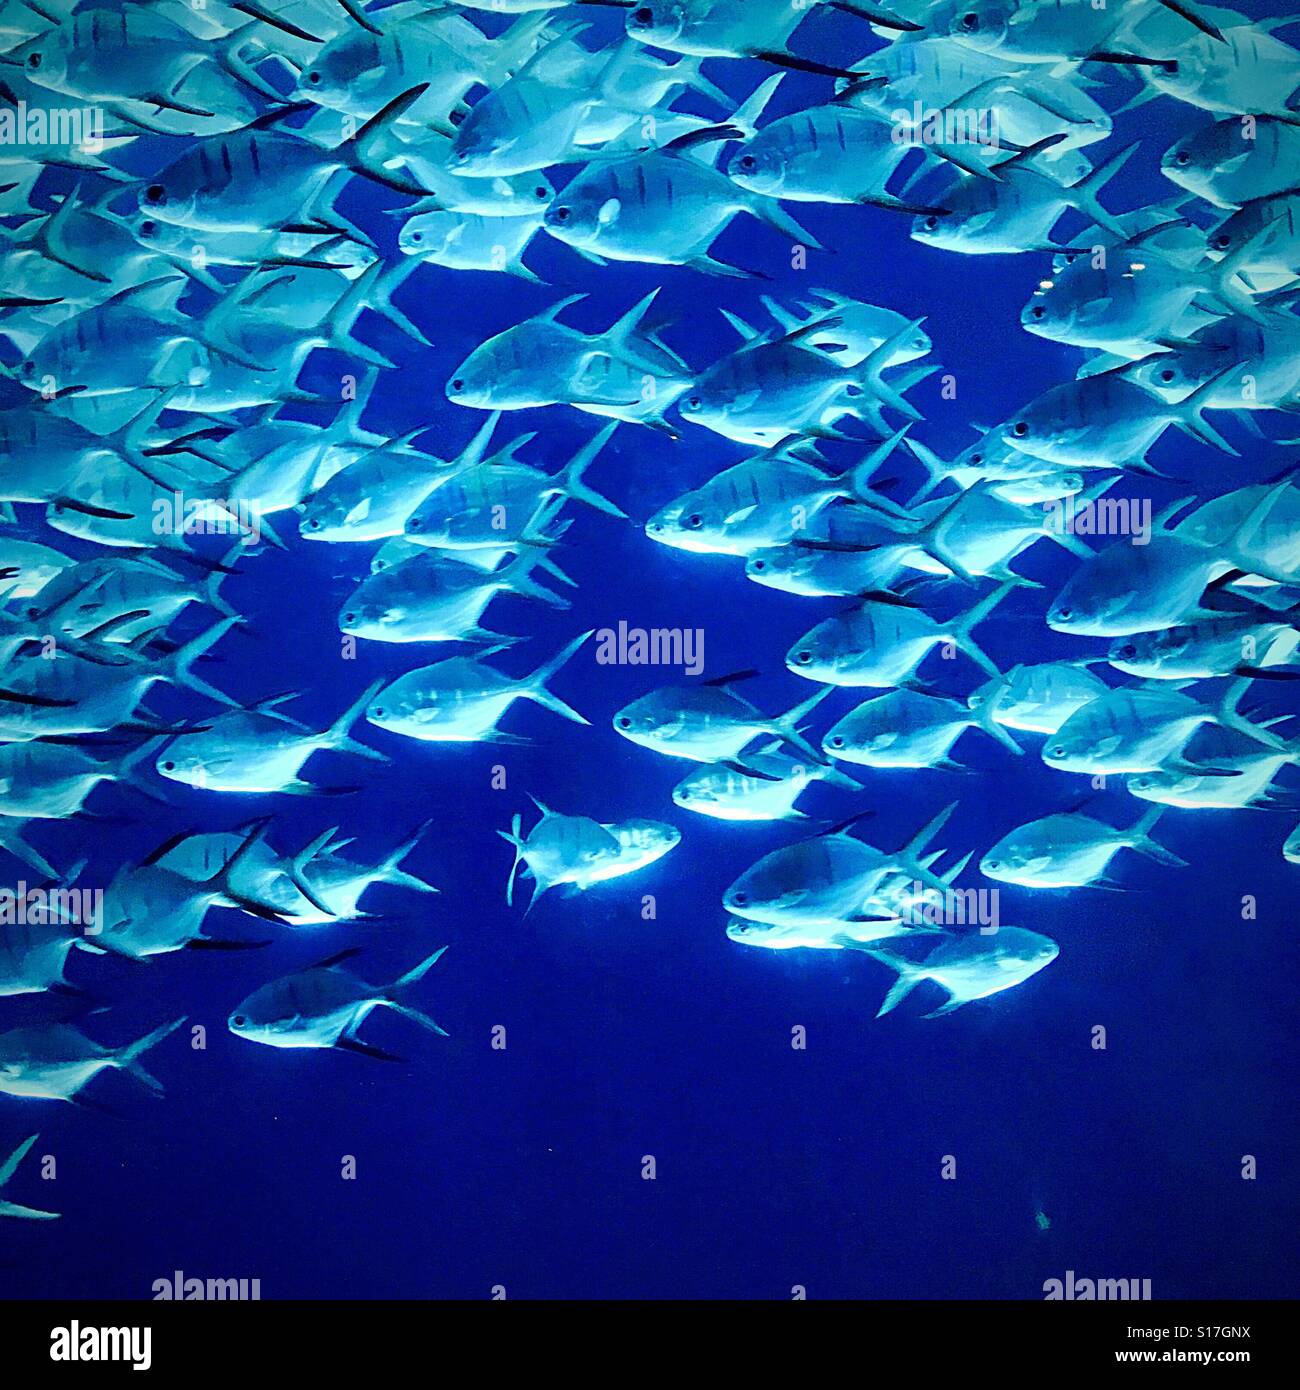 A school of fish at the Georgia Aquarium Stock Photo